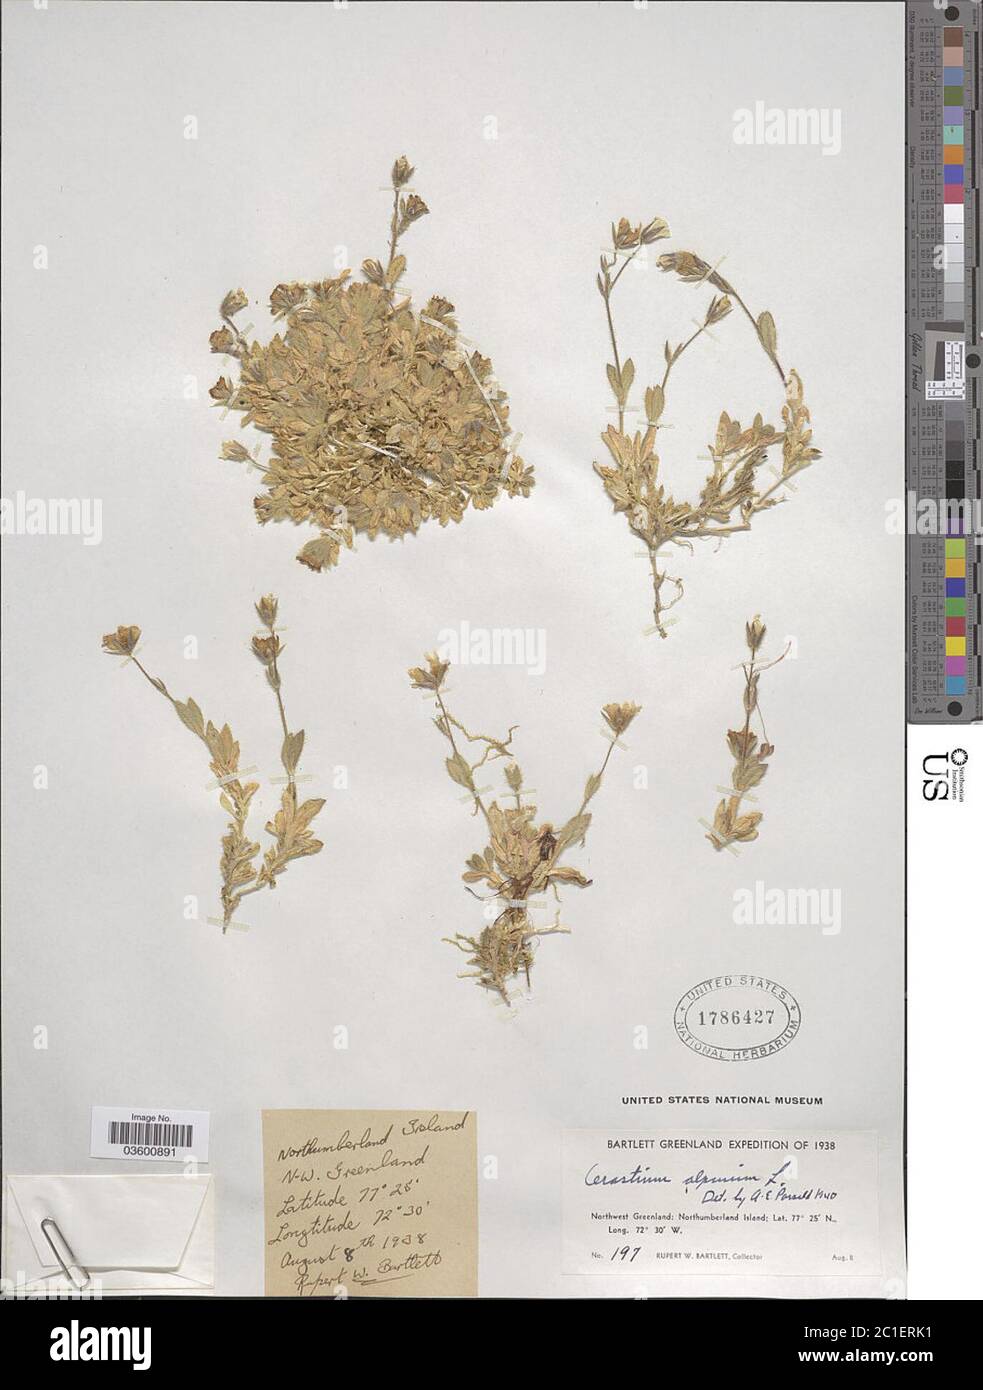 Cerastium alpinum L Cerastium alpinum L. Stock Photo